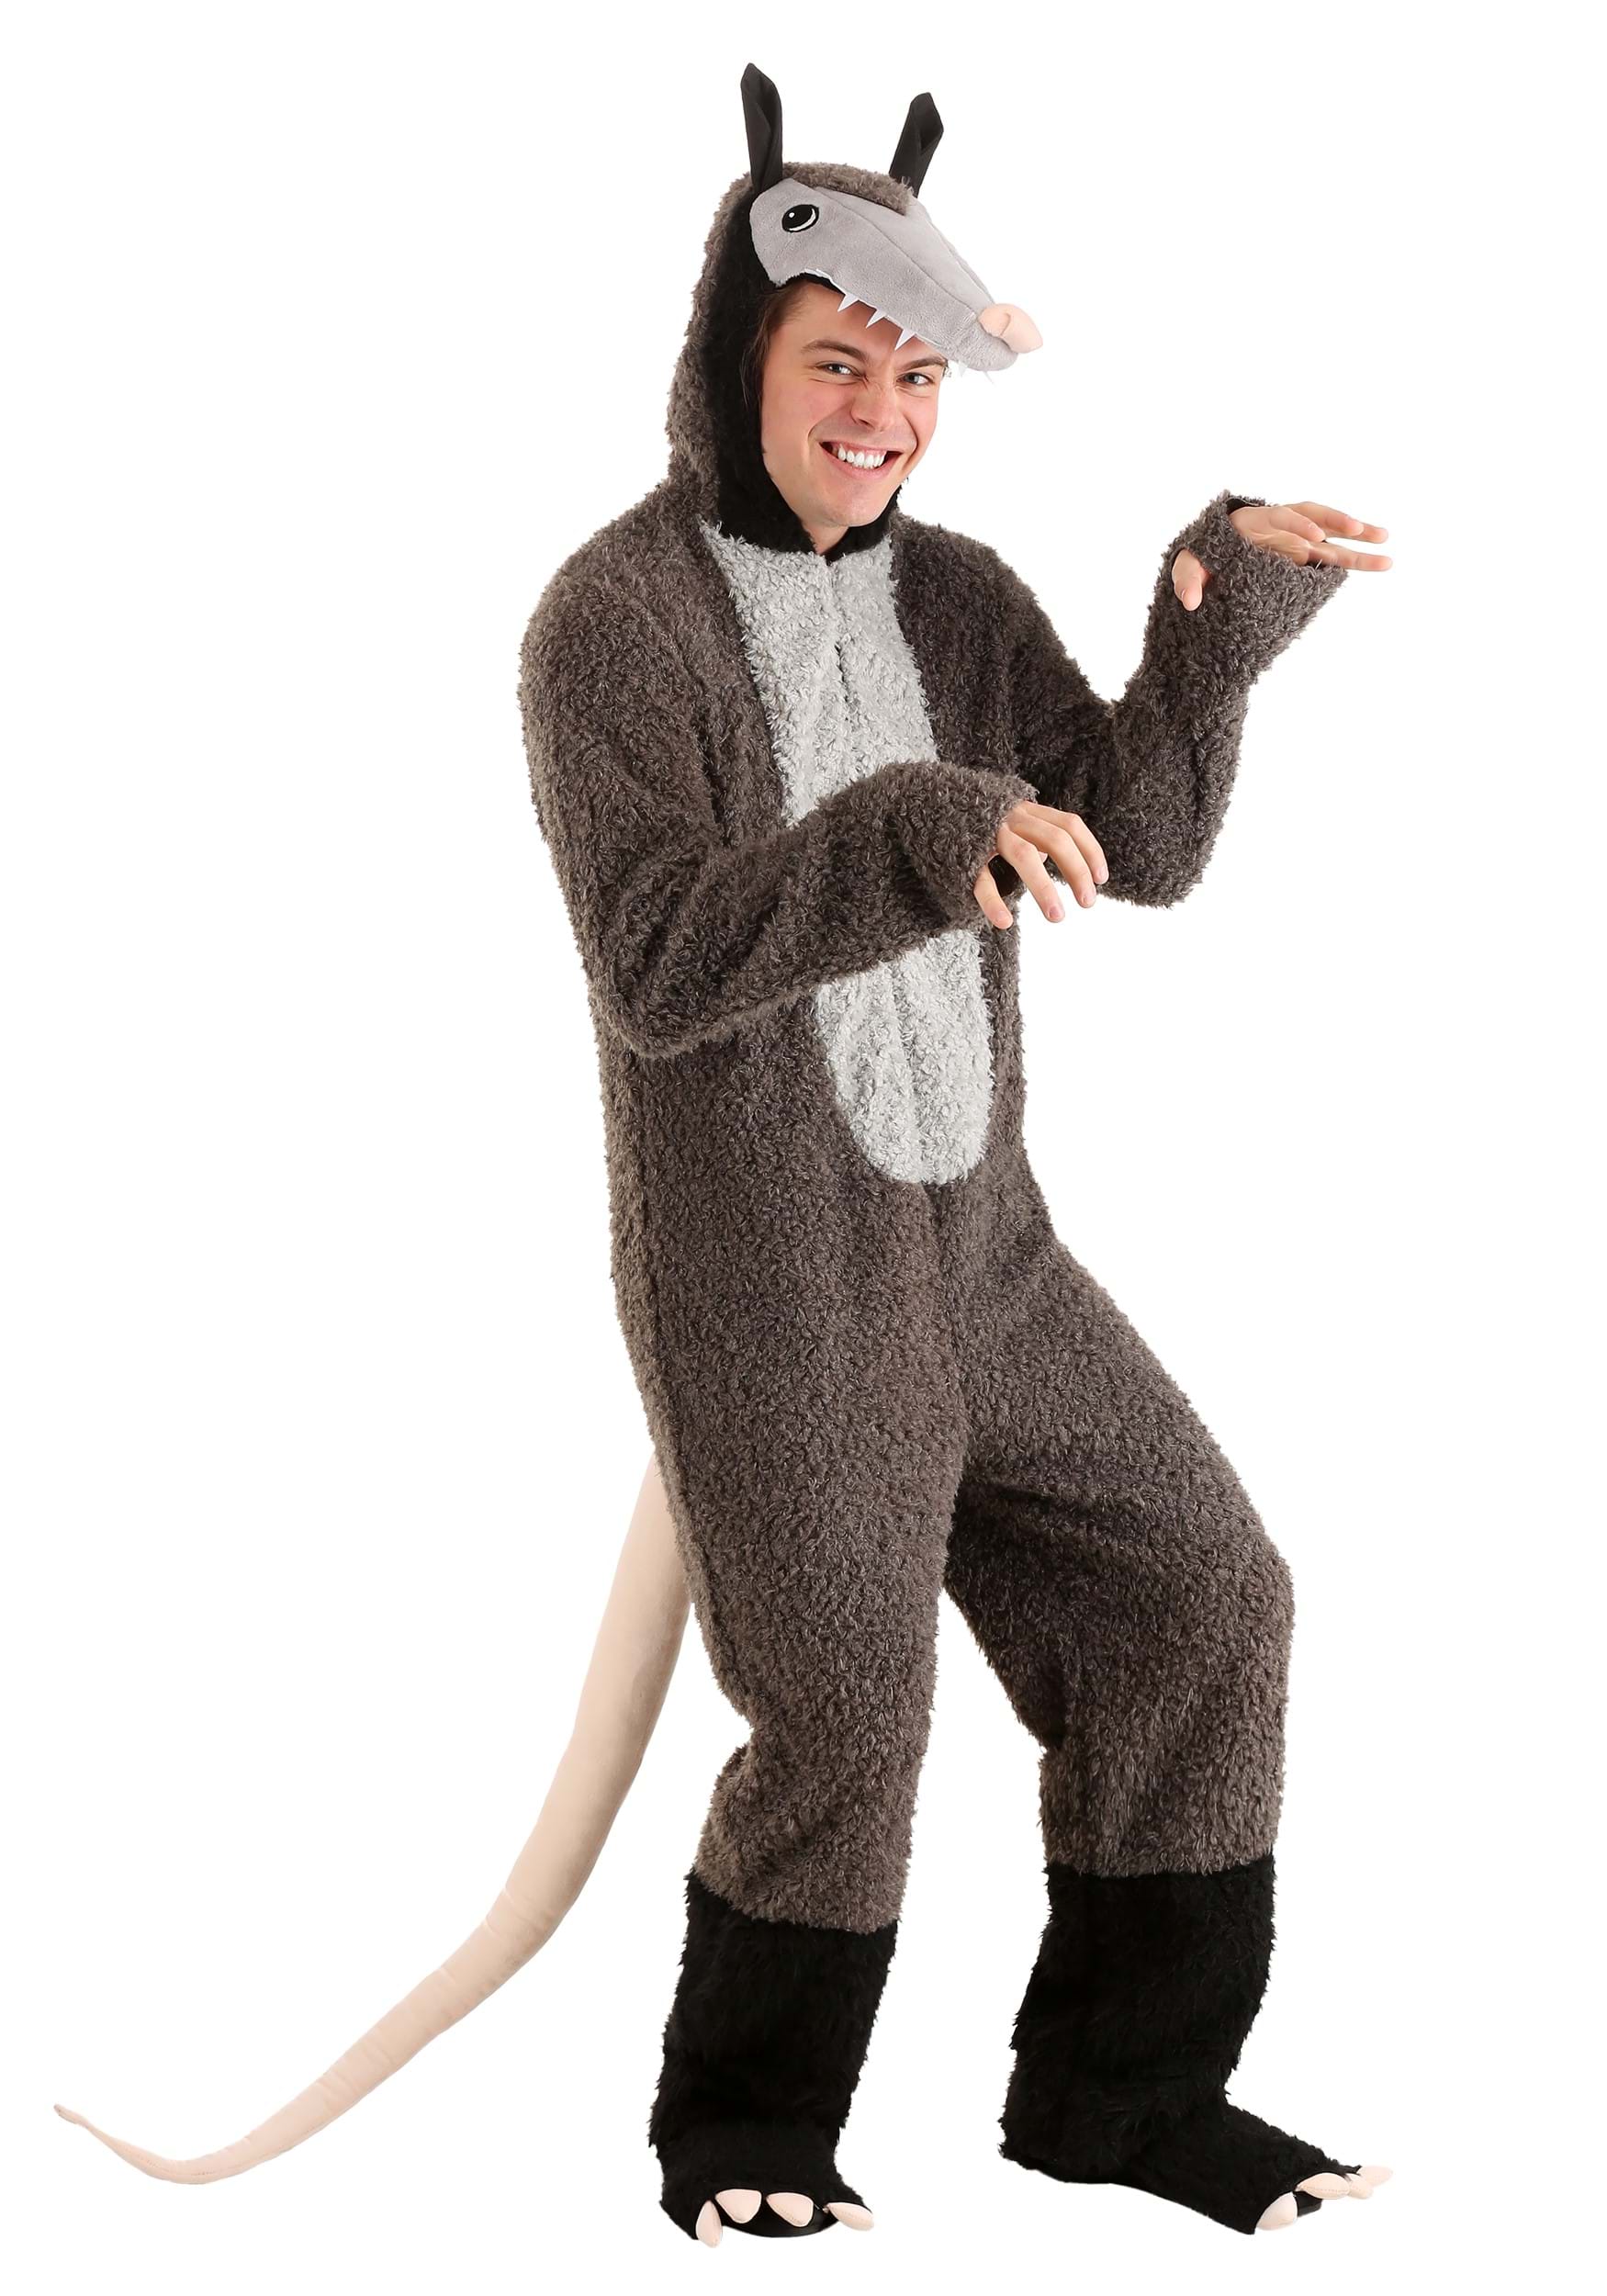 Possum costume